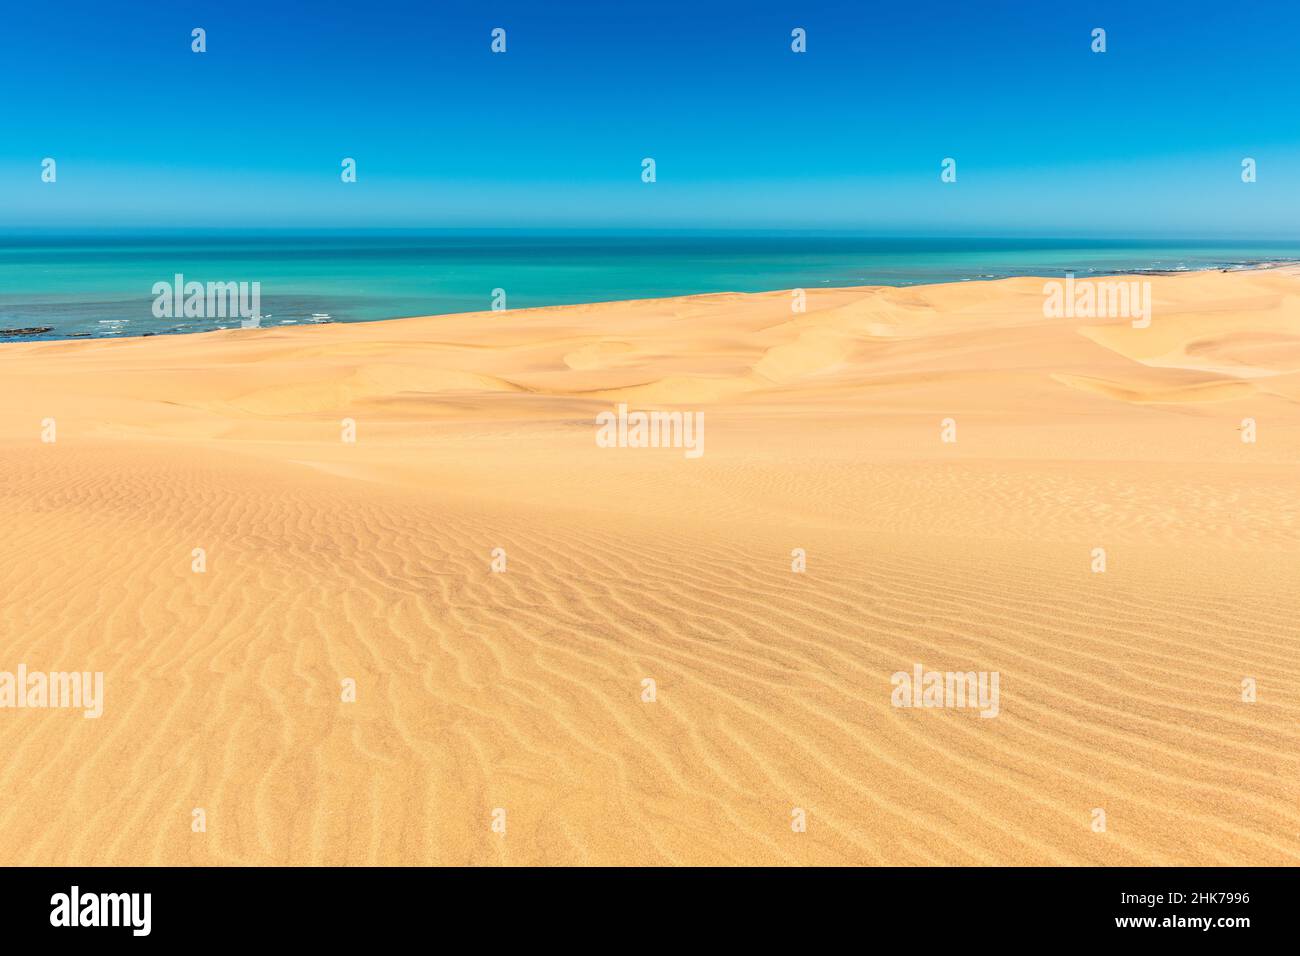 Le désert du Namib rencontre l'Atlantique Sud, Swakopmund, Namibie Banque D'Images